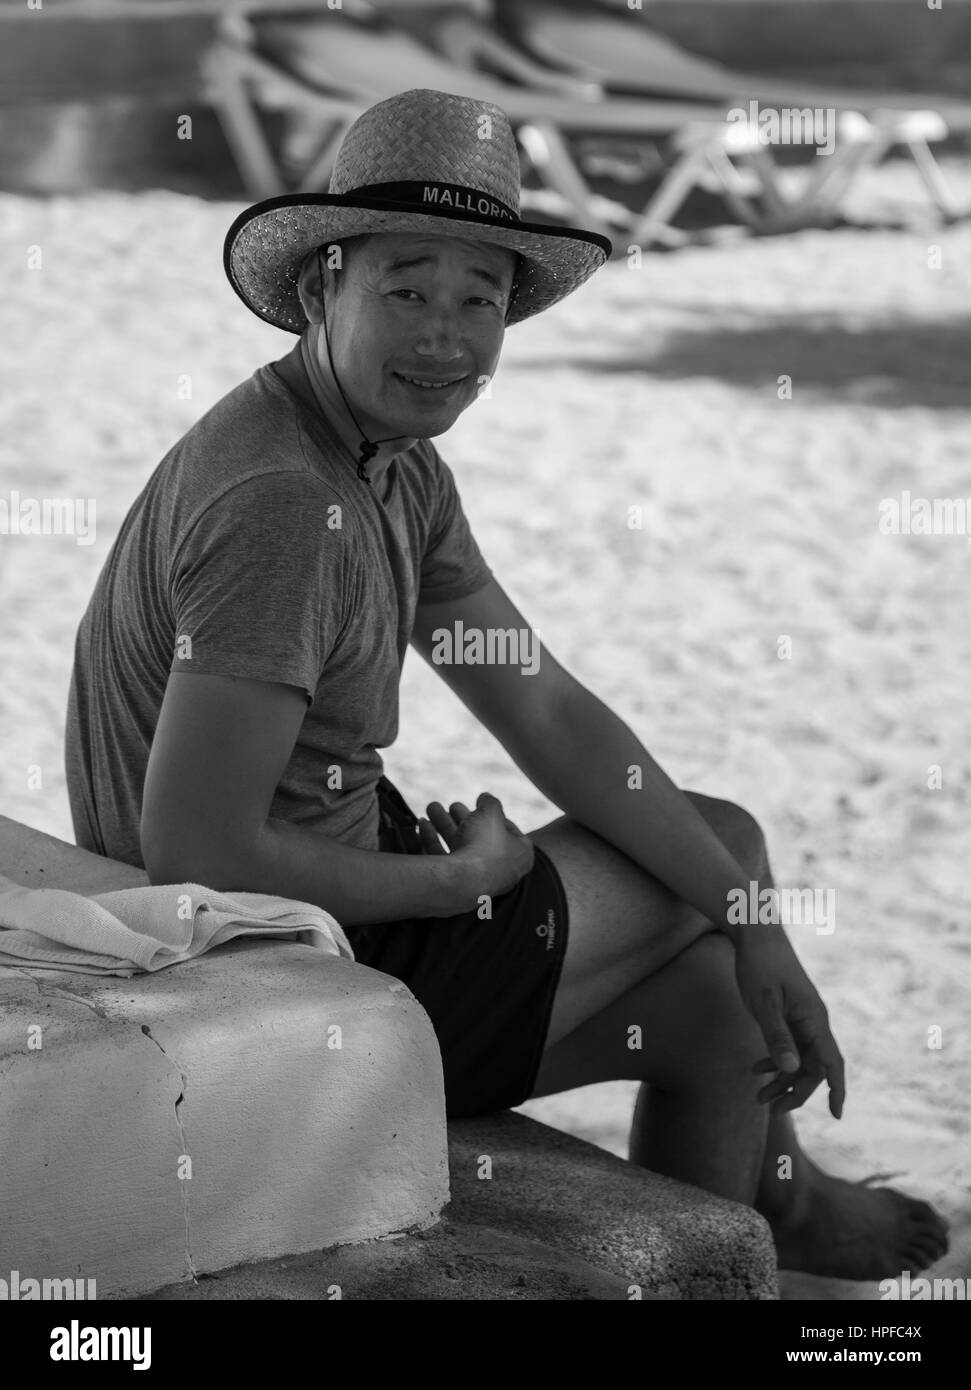 Les gens simples,naturel réel font de leur routine quotidienne. Homme Portreture...Chineze reposant à plage de Cala d''or, profiter de la vue...sourire... Banque D'Images